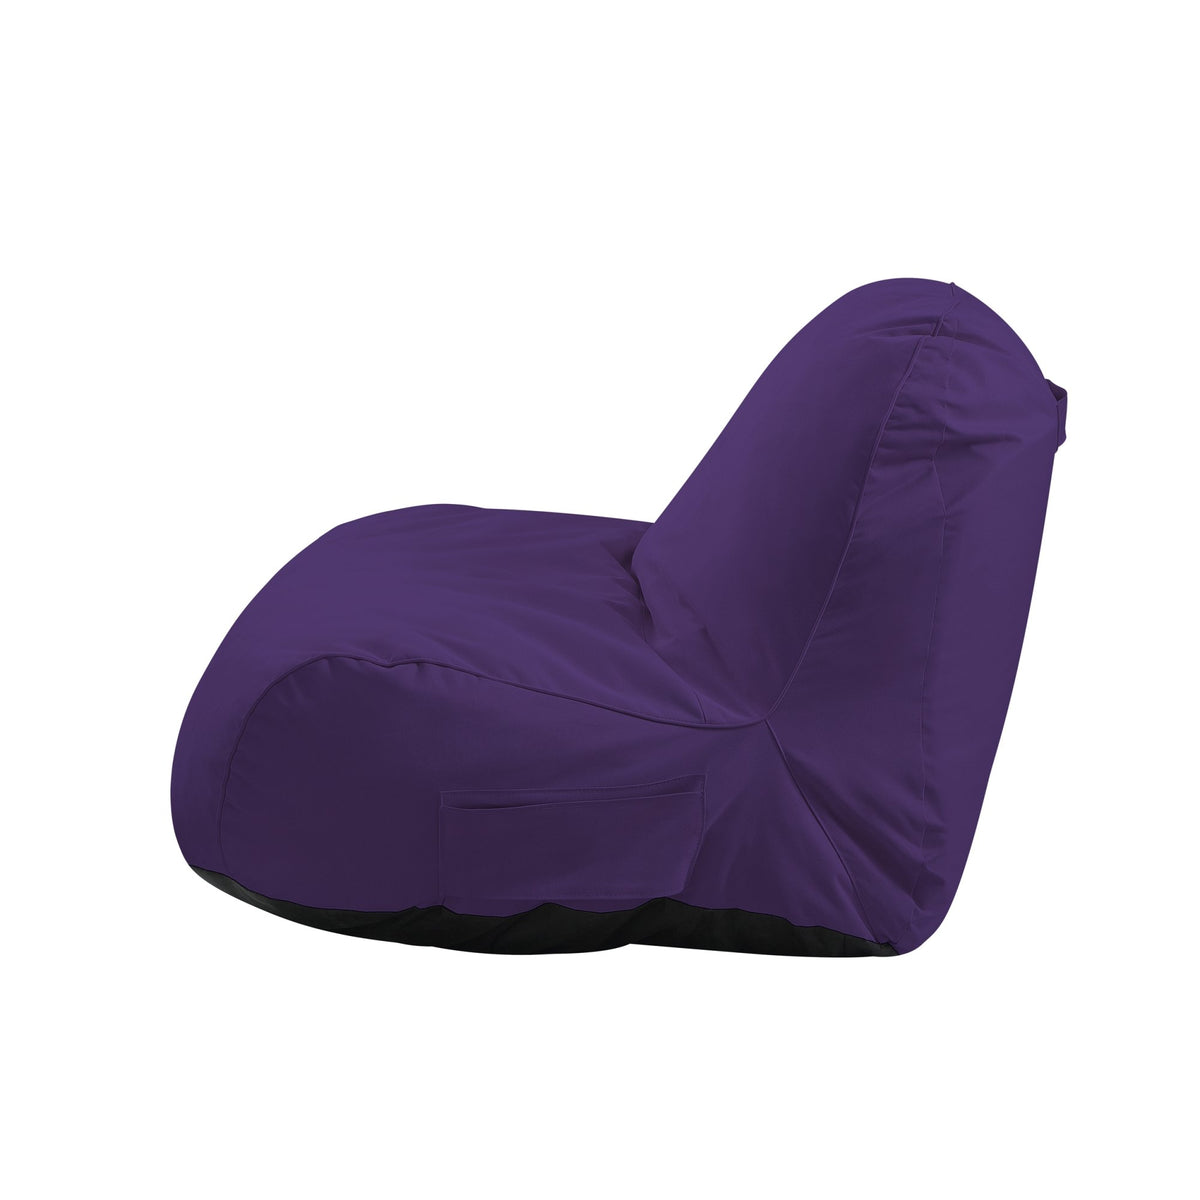 Cosmic Bean Bag Chair/ Lounge Chair/ Memory Foam Chair/ Floor Chair